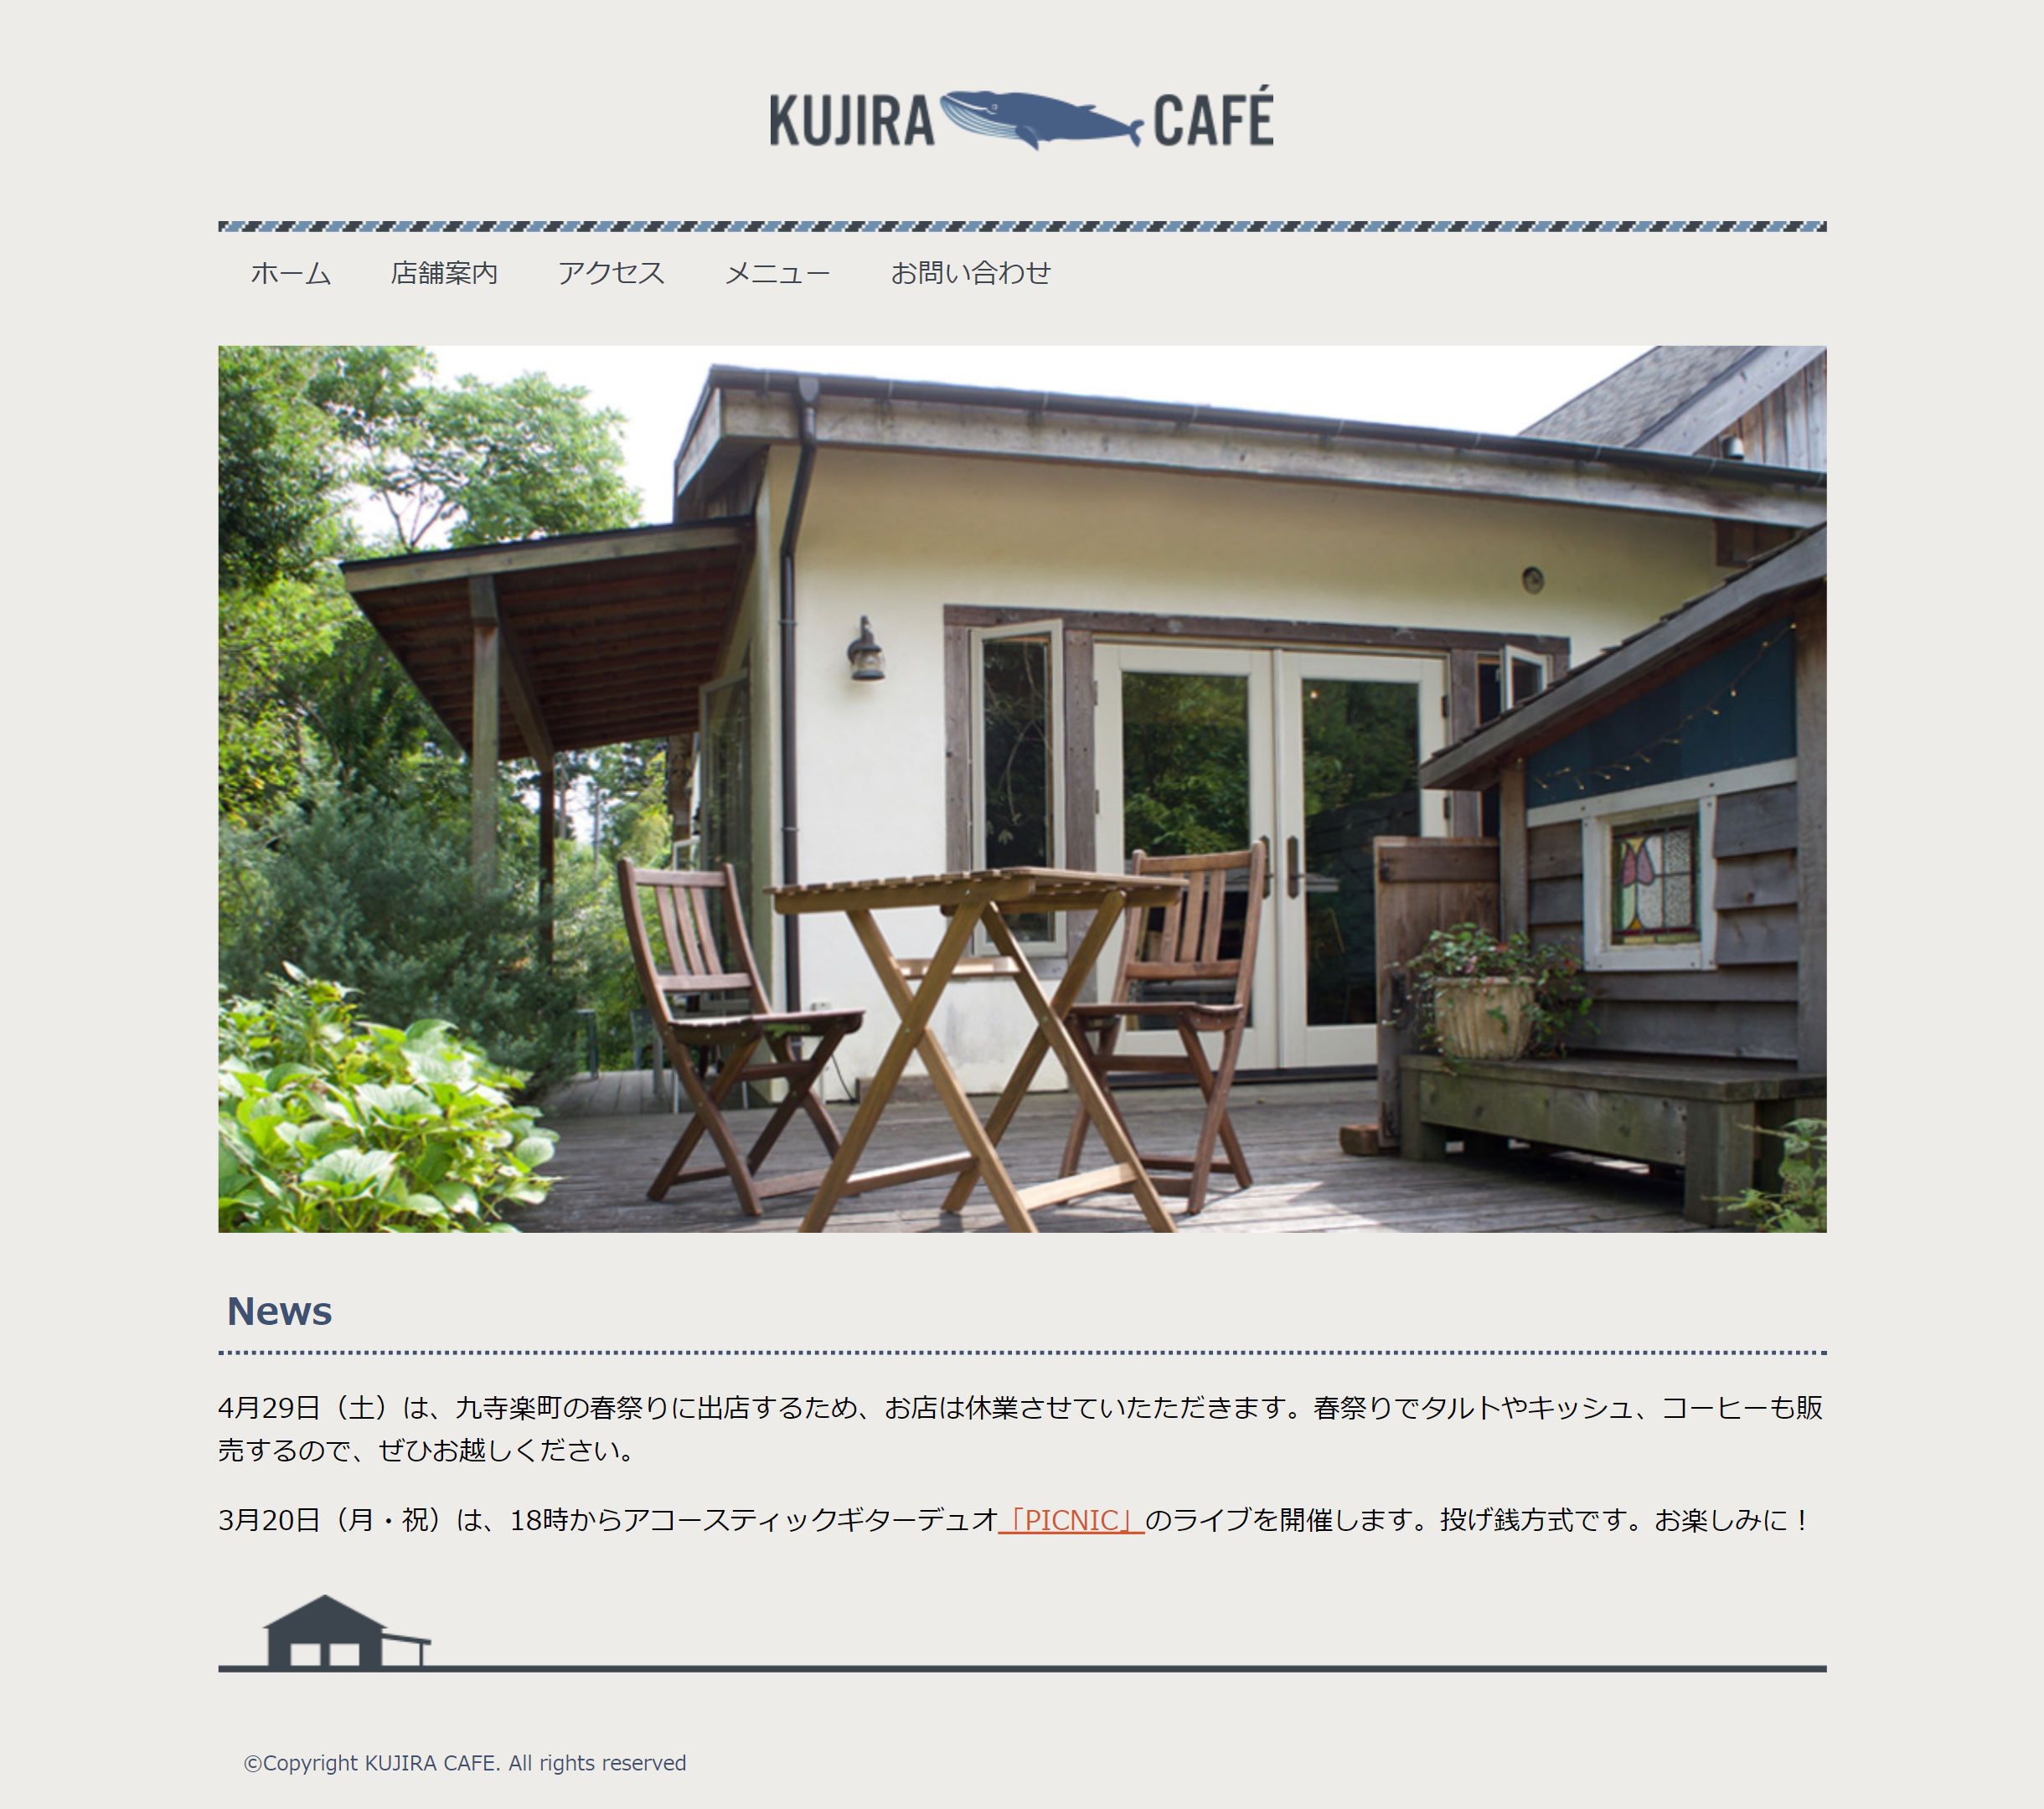 KUJIRA Cafe